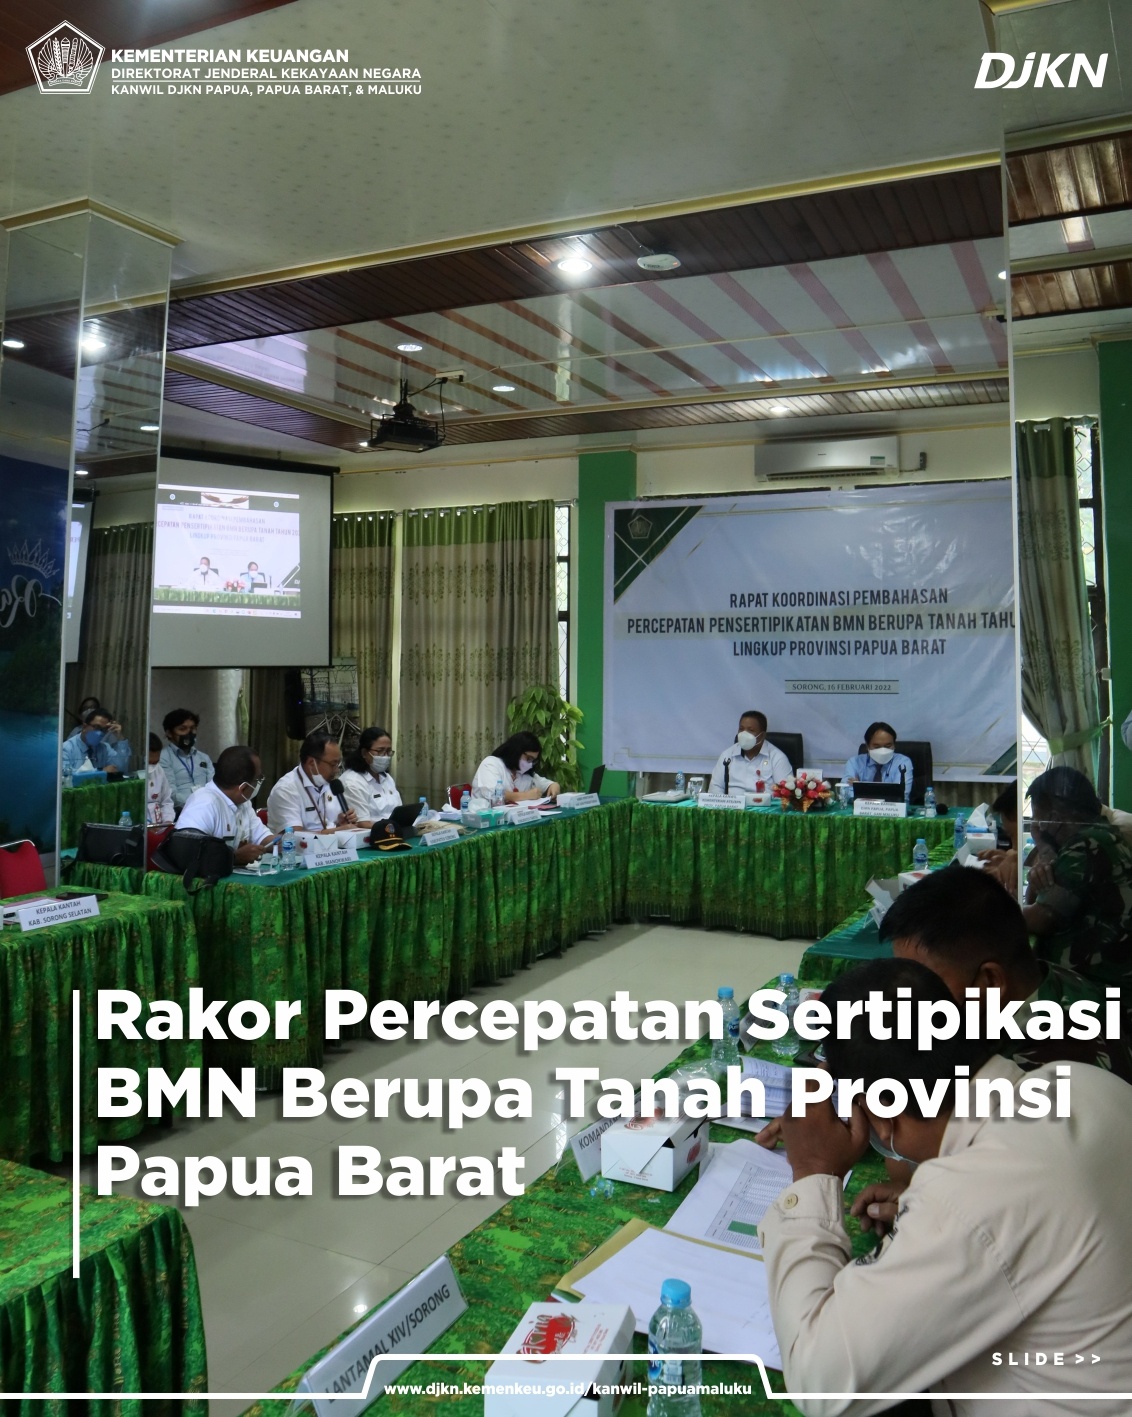 Rapat Koordinasi Percepatan Sertipikasi BMN Berupa Tanah Provinsi Papua Barat Tahun 2022